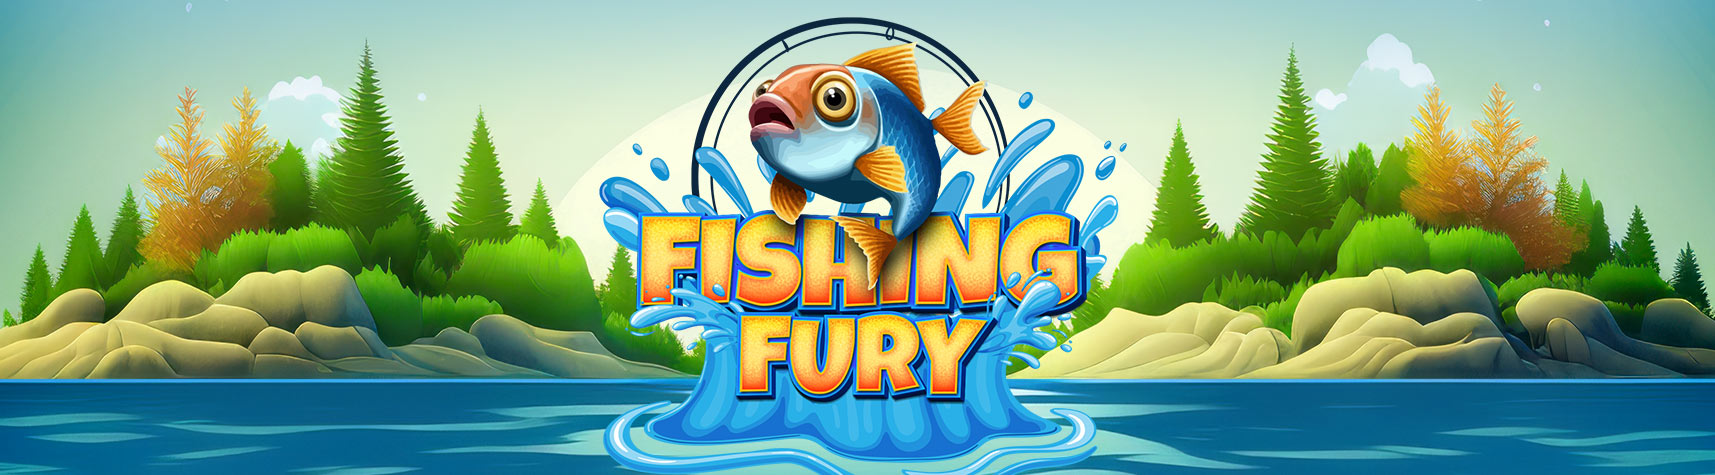 FishingFury 1715x475